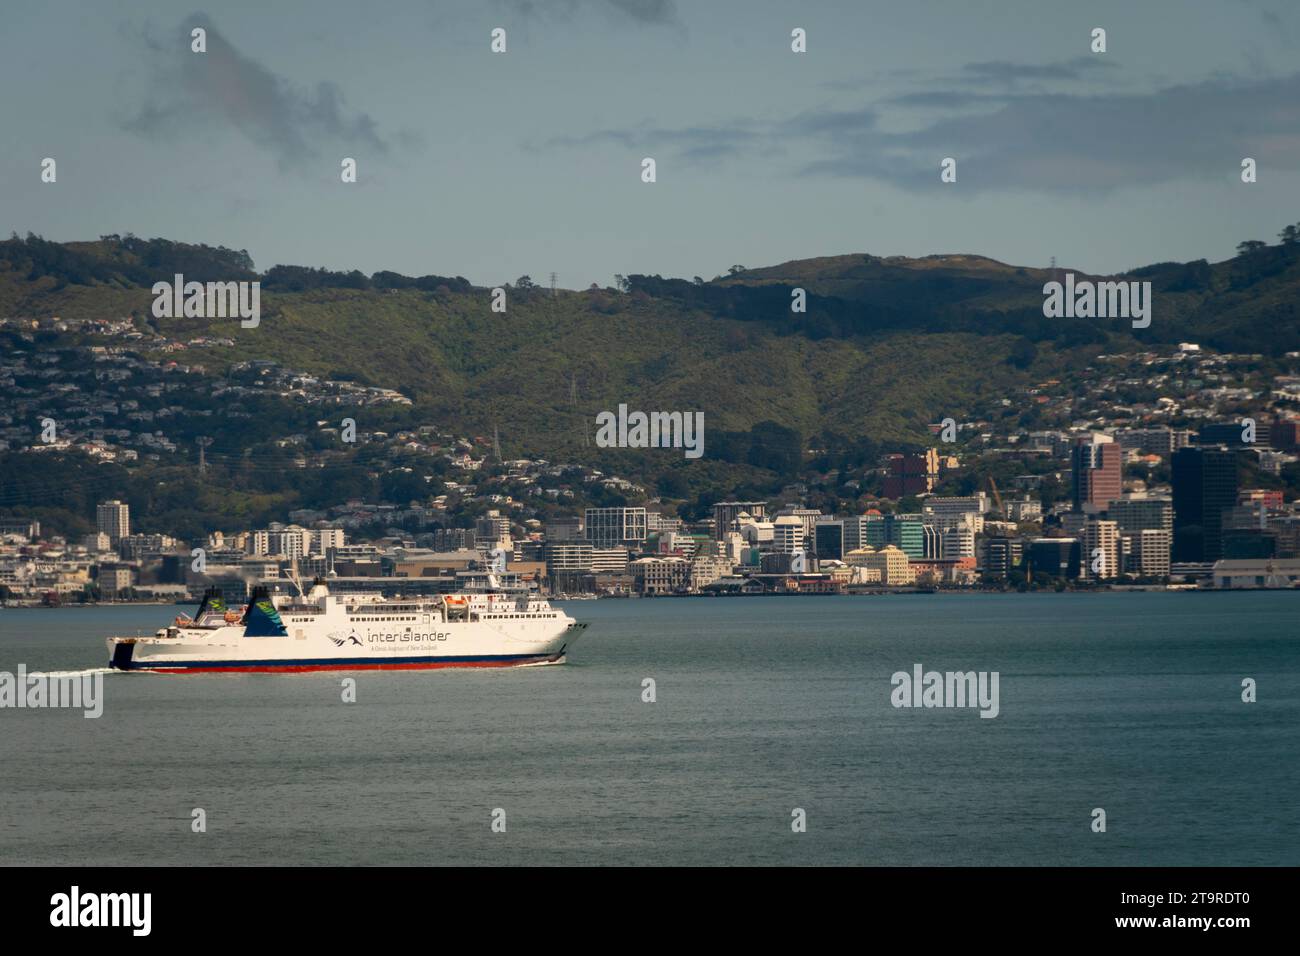 Centre-ville de Wellington depuis l'île de Soames avec ferry Interislander au premier plan, Wellington Harbour, Île du Nord, Nouvelle-Zélande Banque D'Images